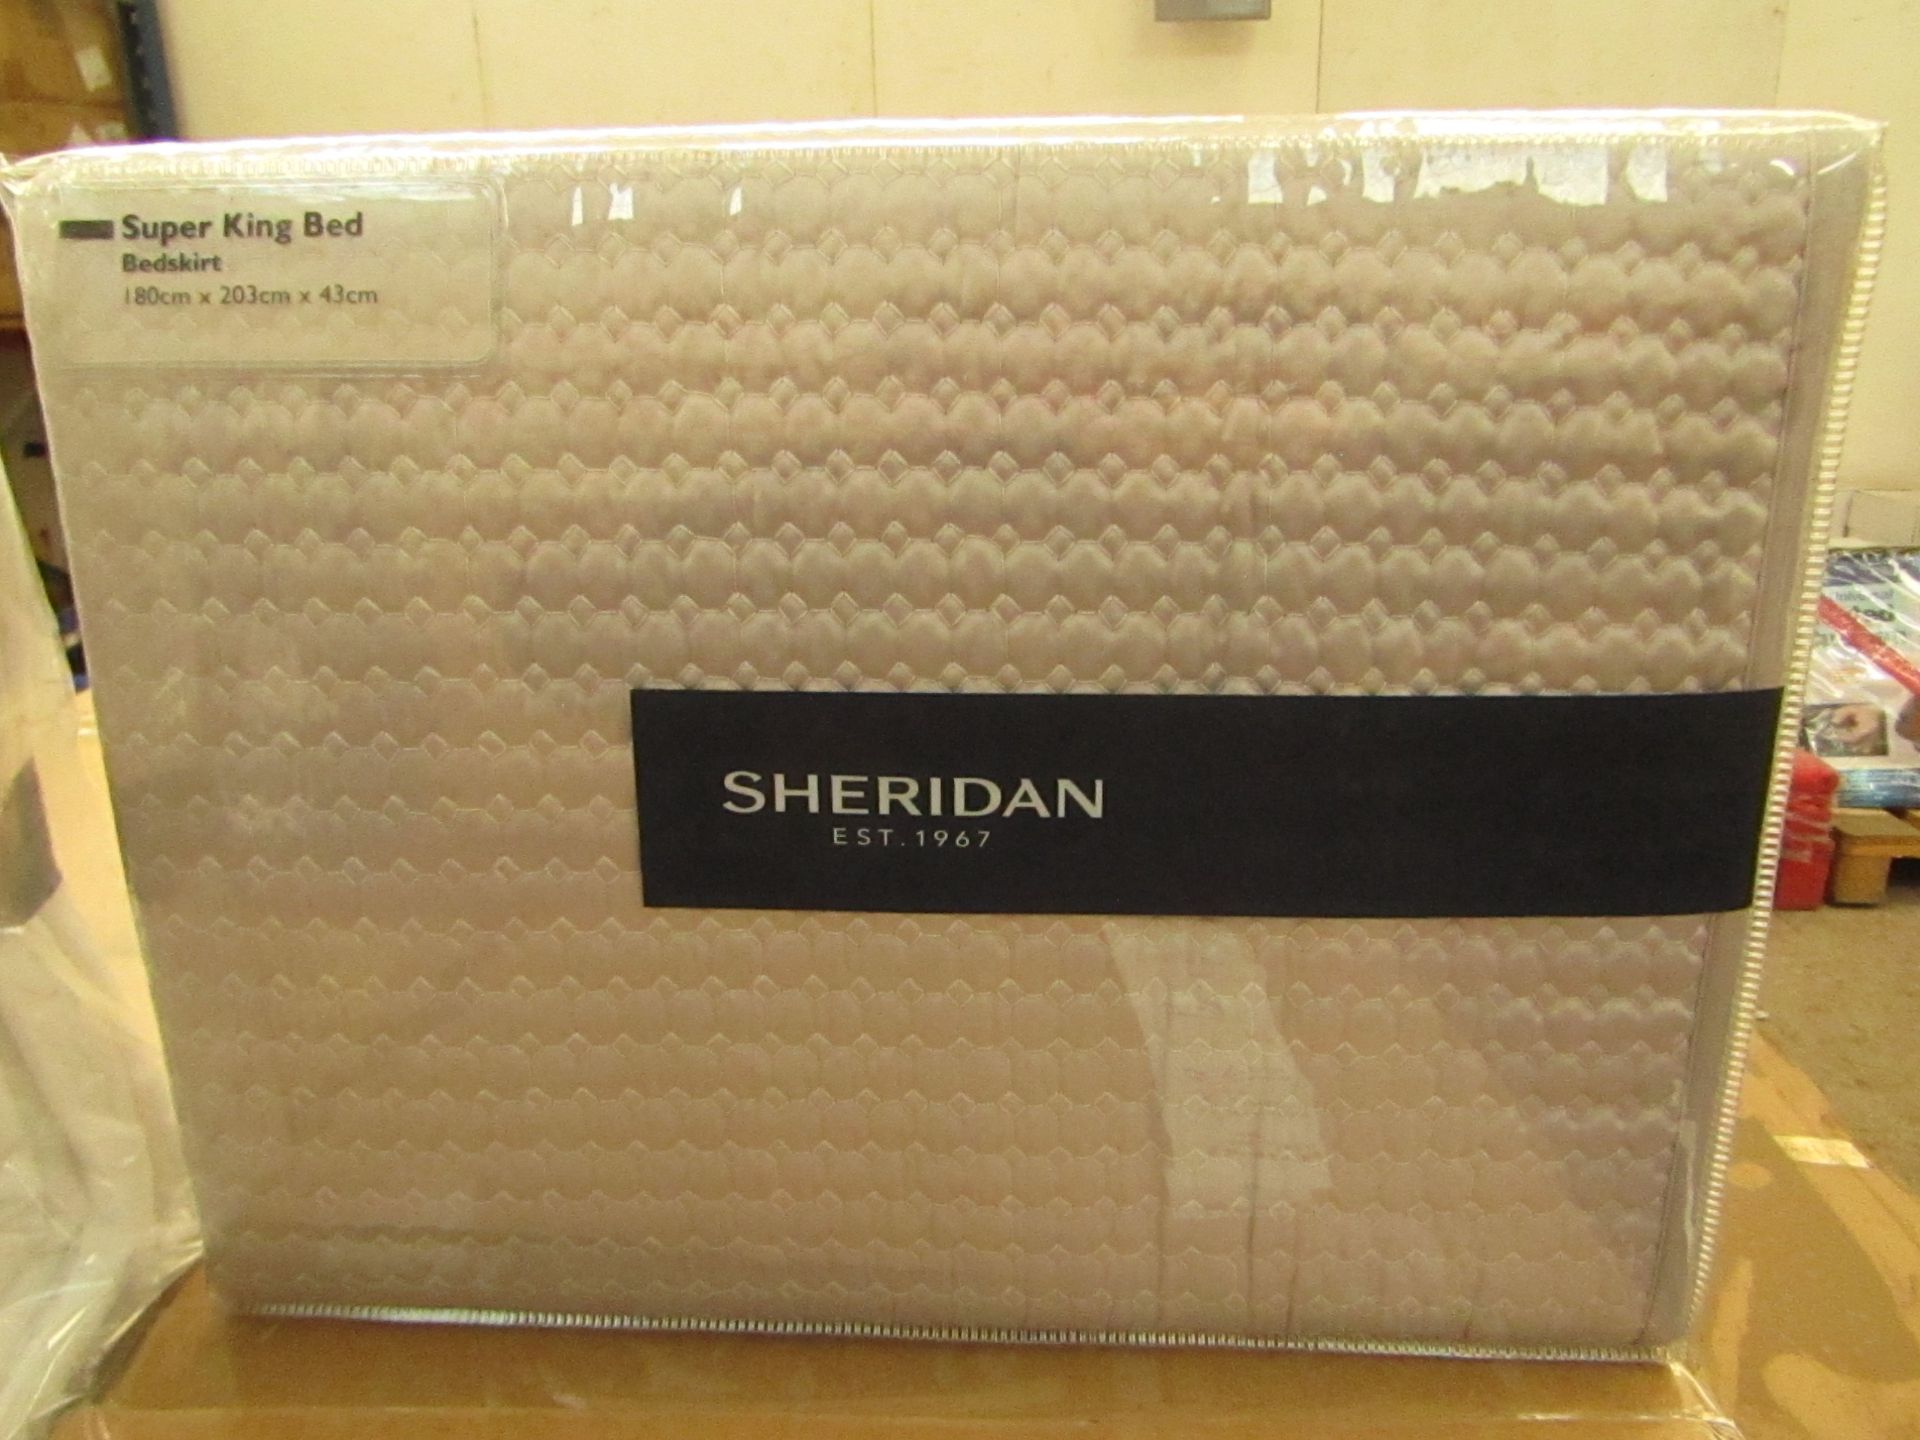 Sheridan - Christobel Bedskirt - Colour Dove - Size Super-King - New & Packaged. RRP £75.